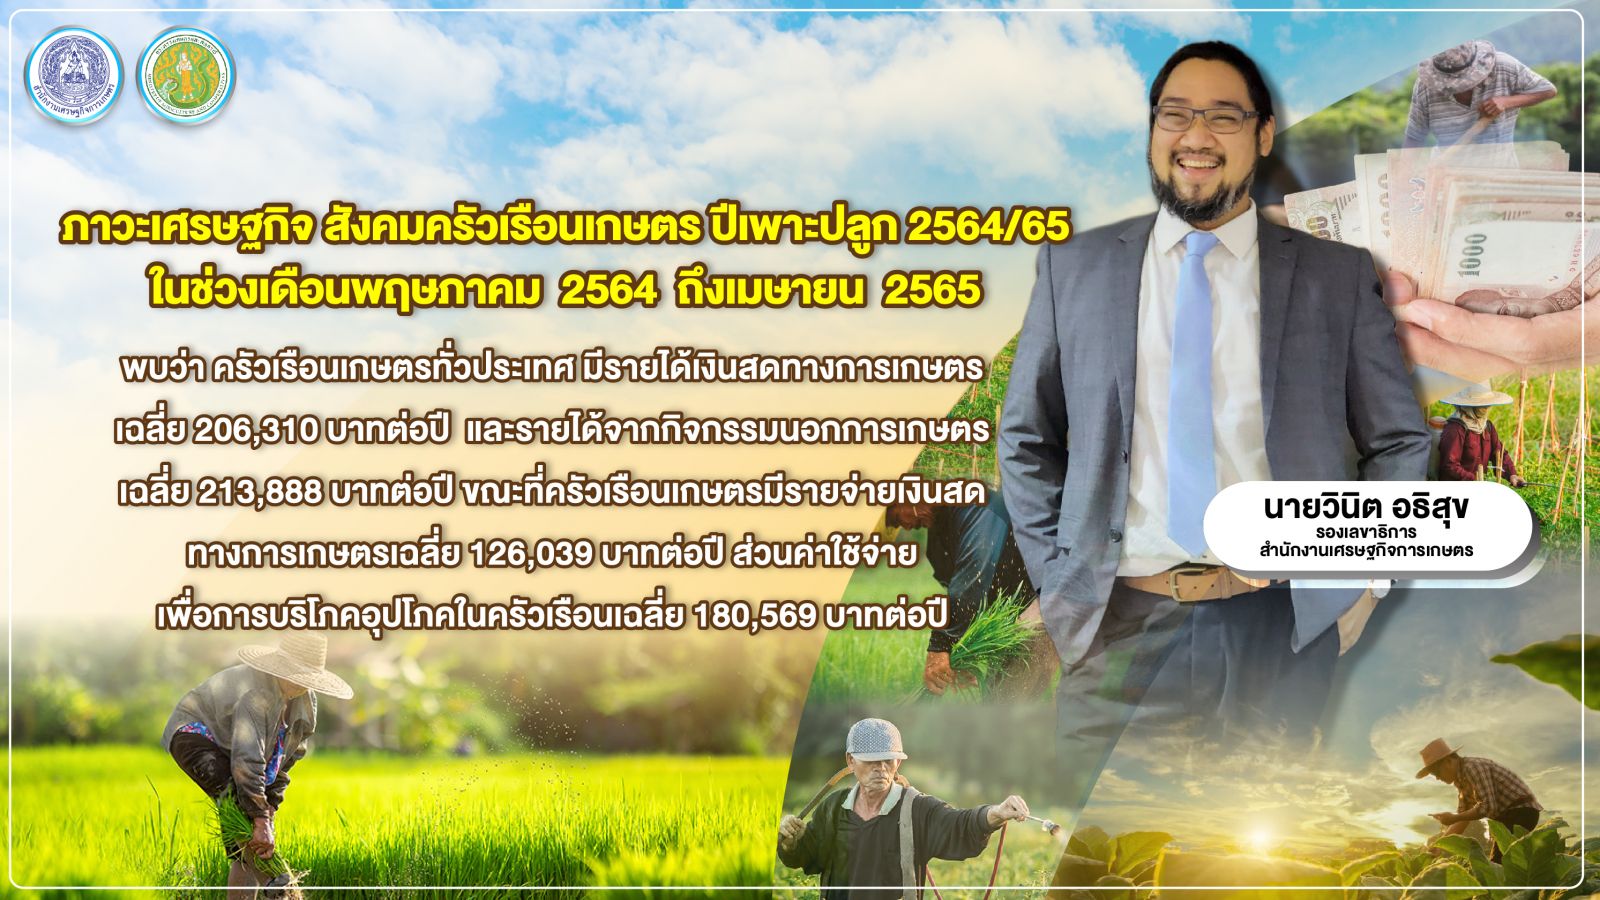 สศก. เผย ผลสำรวจข้อมูลภาวะเศรษฐกิจสังคมครัวเรือนเกษตร ปี 65 ระบุ เกษตรกรไทย  มีรายได้เงินสดทางการเกษตรเฉลี่ย 206,310 บาท/ปี